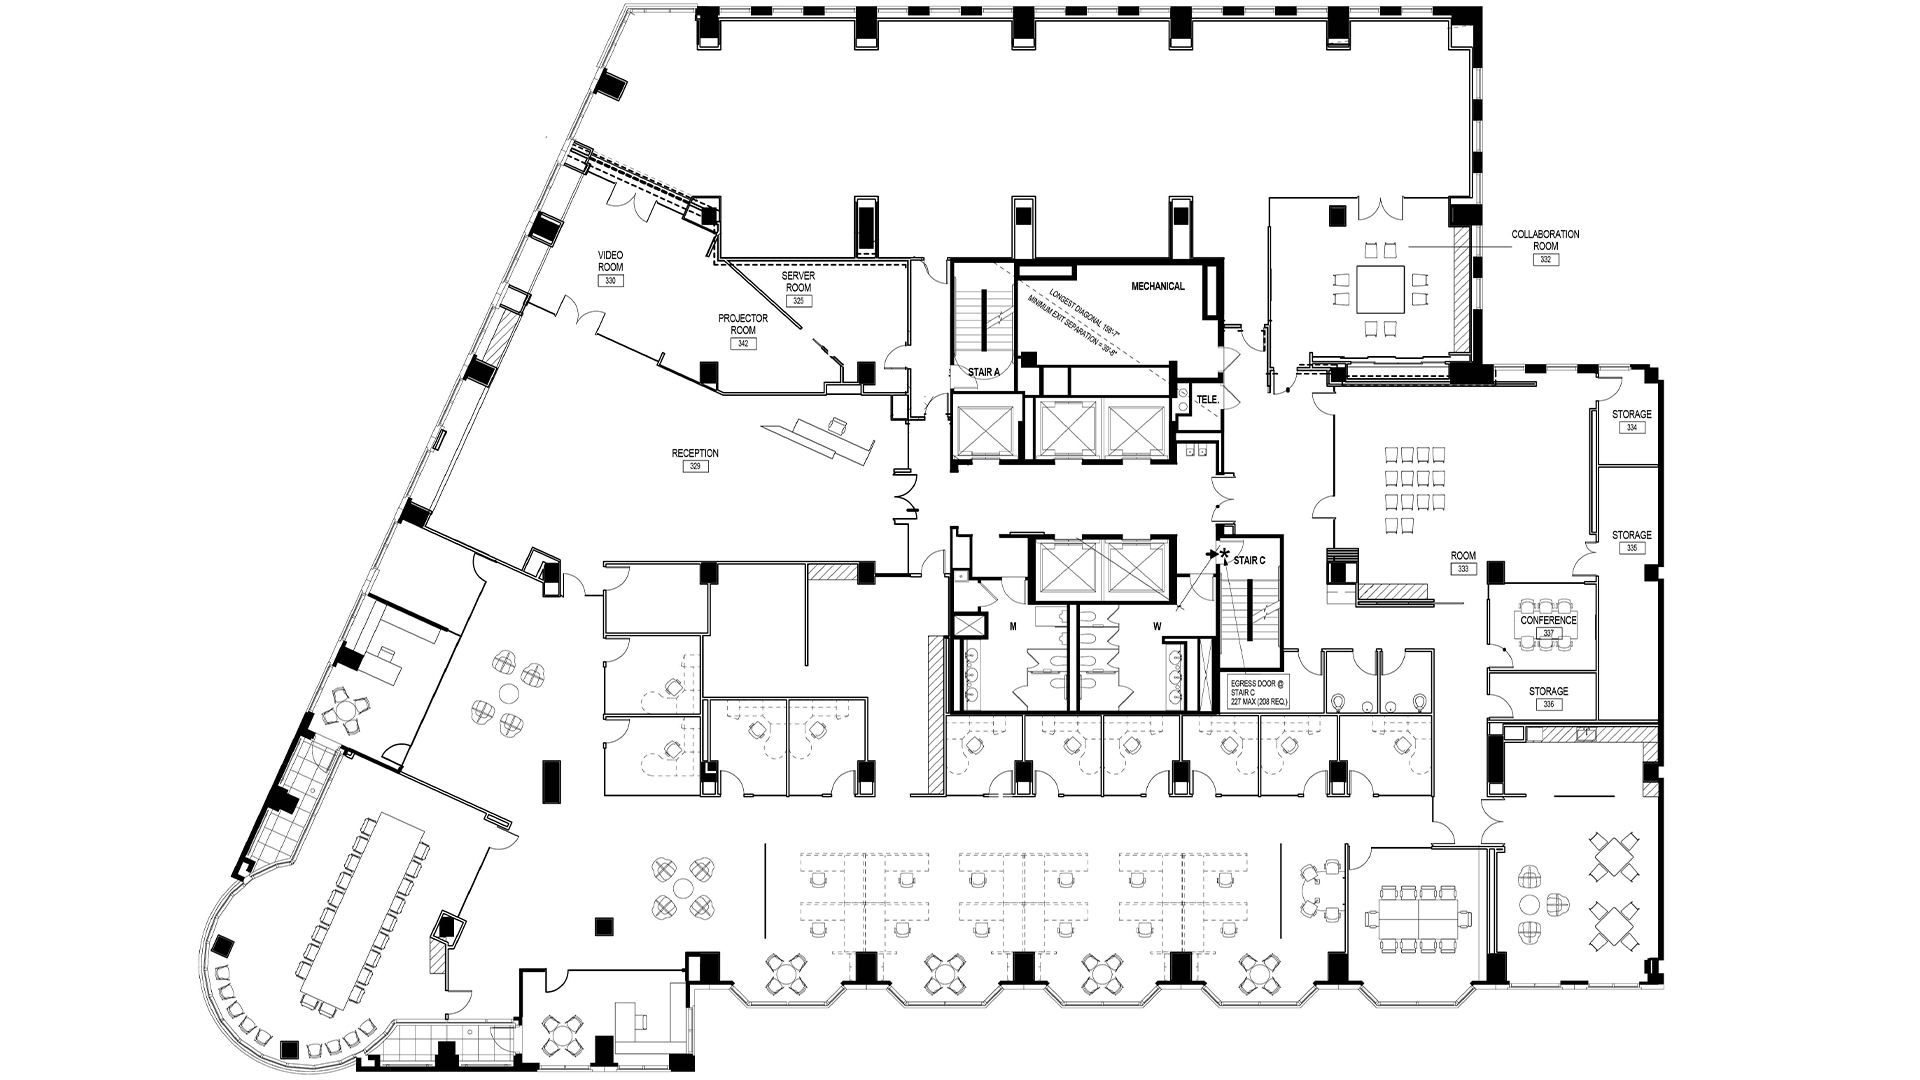 1425 K St NW floor plan